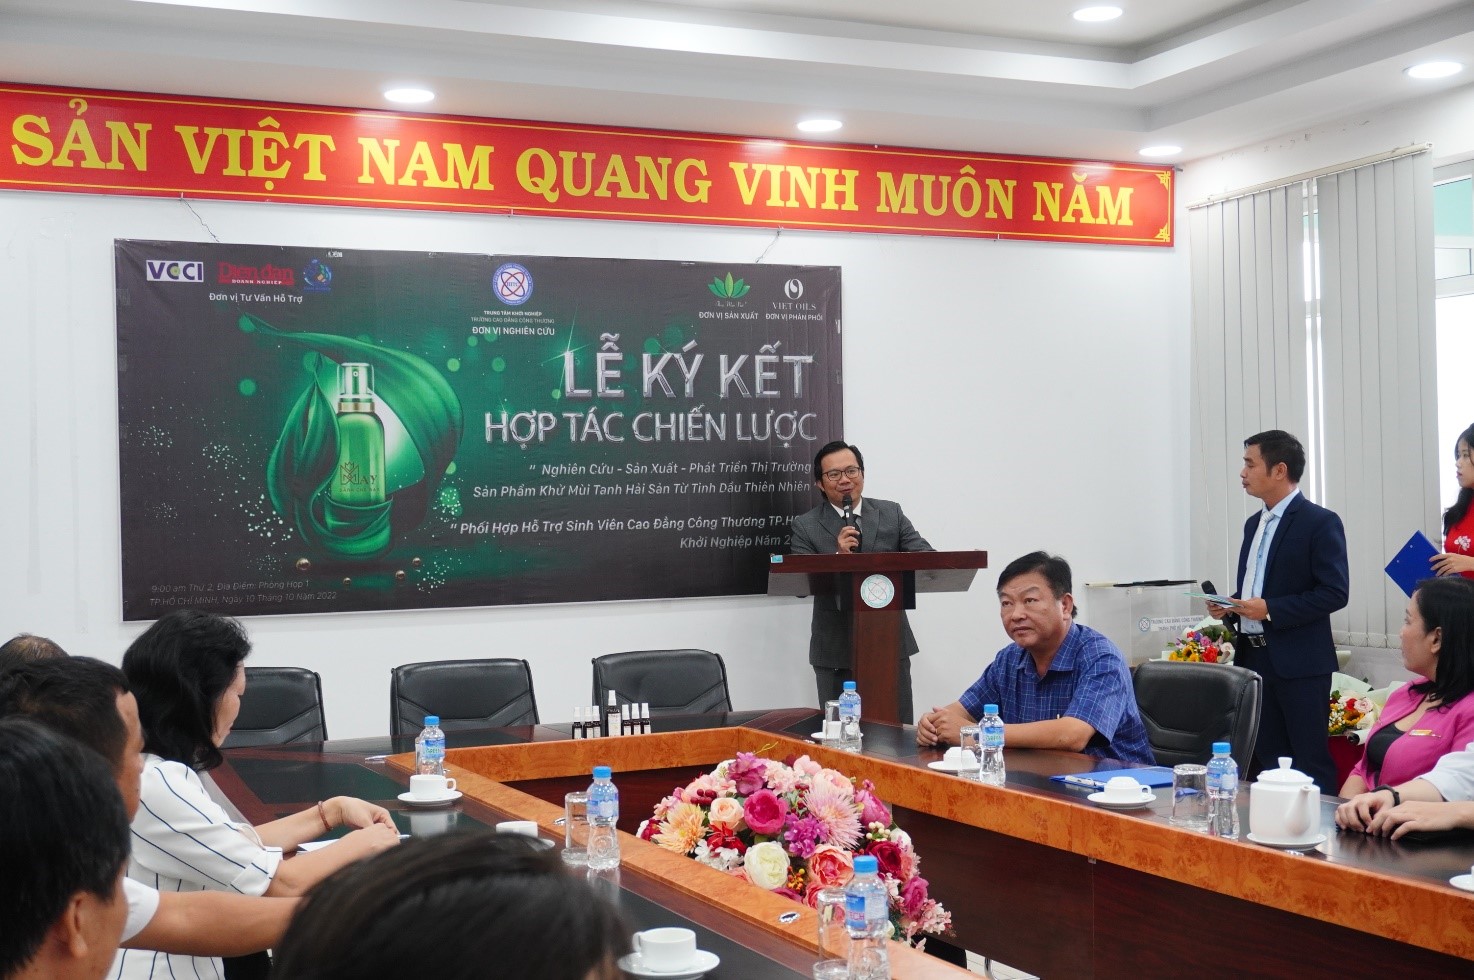 Ông Võ Minh Tâm - CEO Công ty TNHH TM VietOils chia sẻ kinh nghiệm